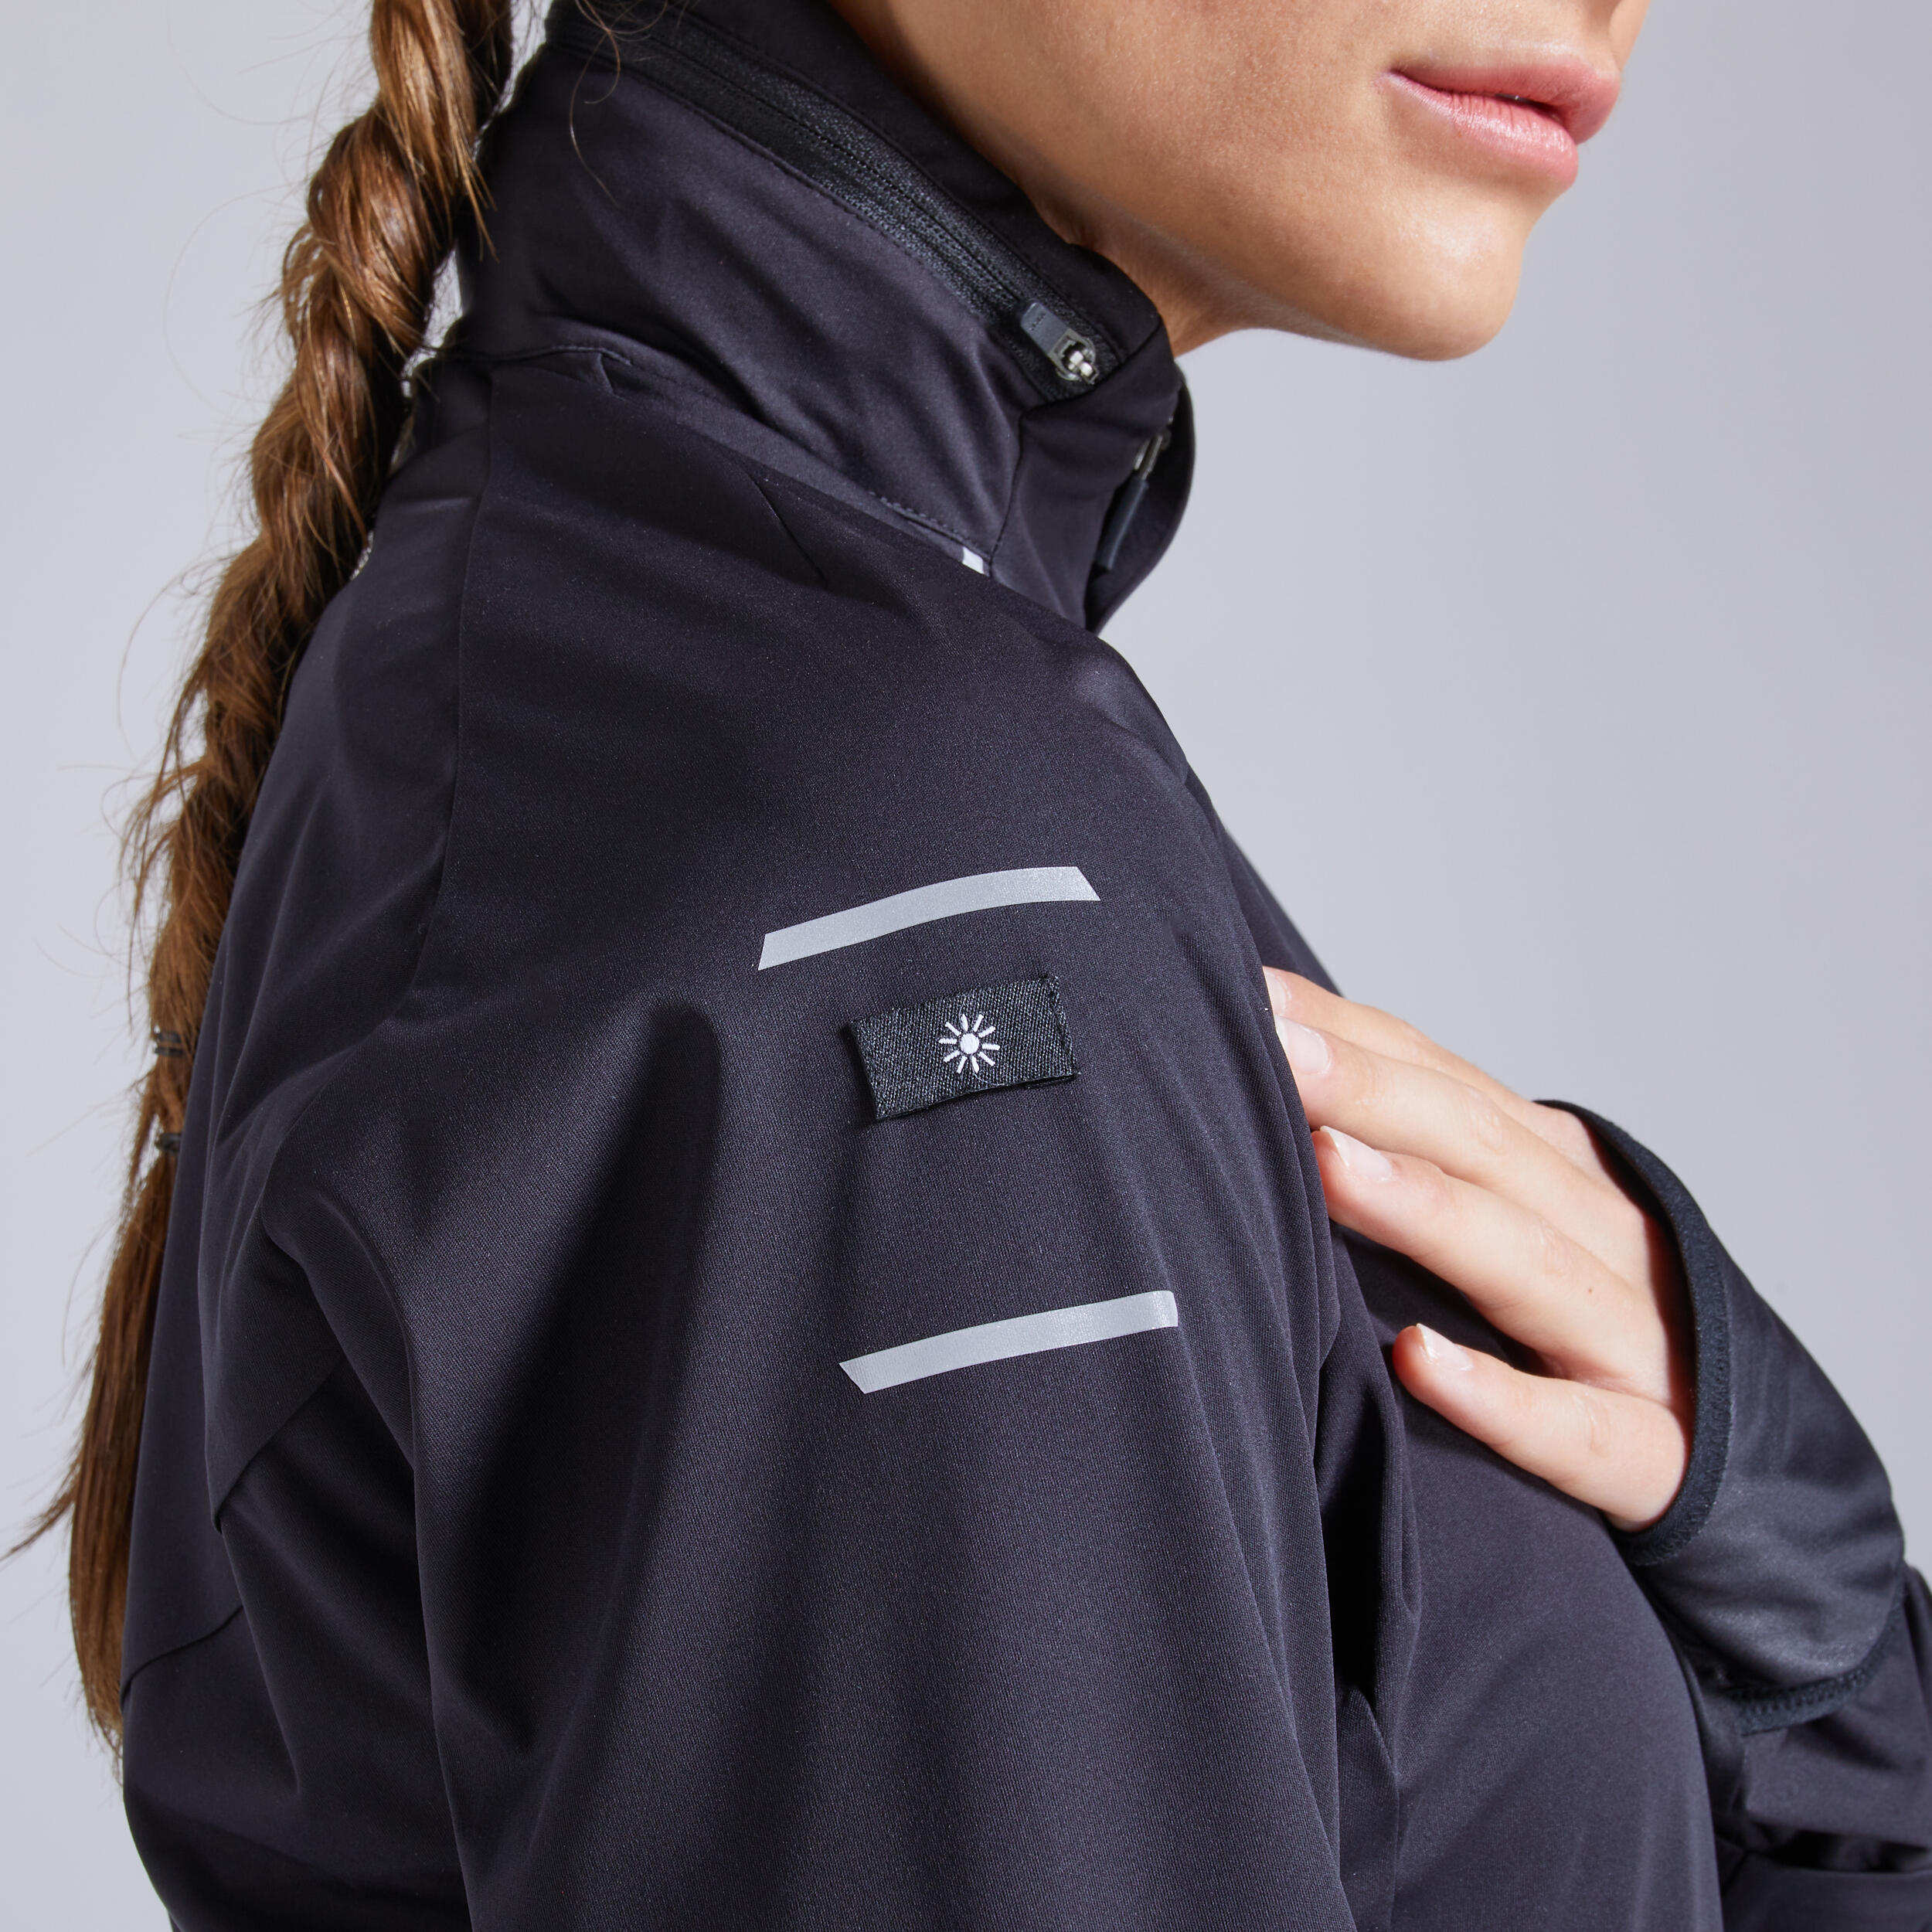 Women's Running Jacket - Warm Regul F Black - KIPRUN